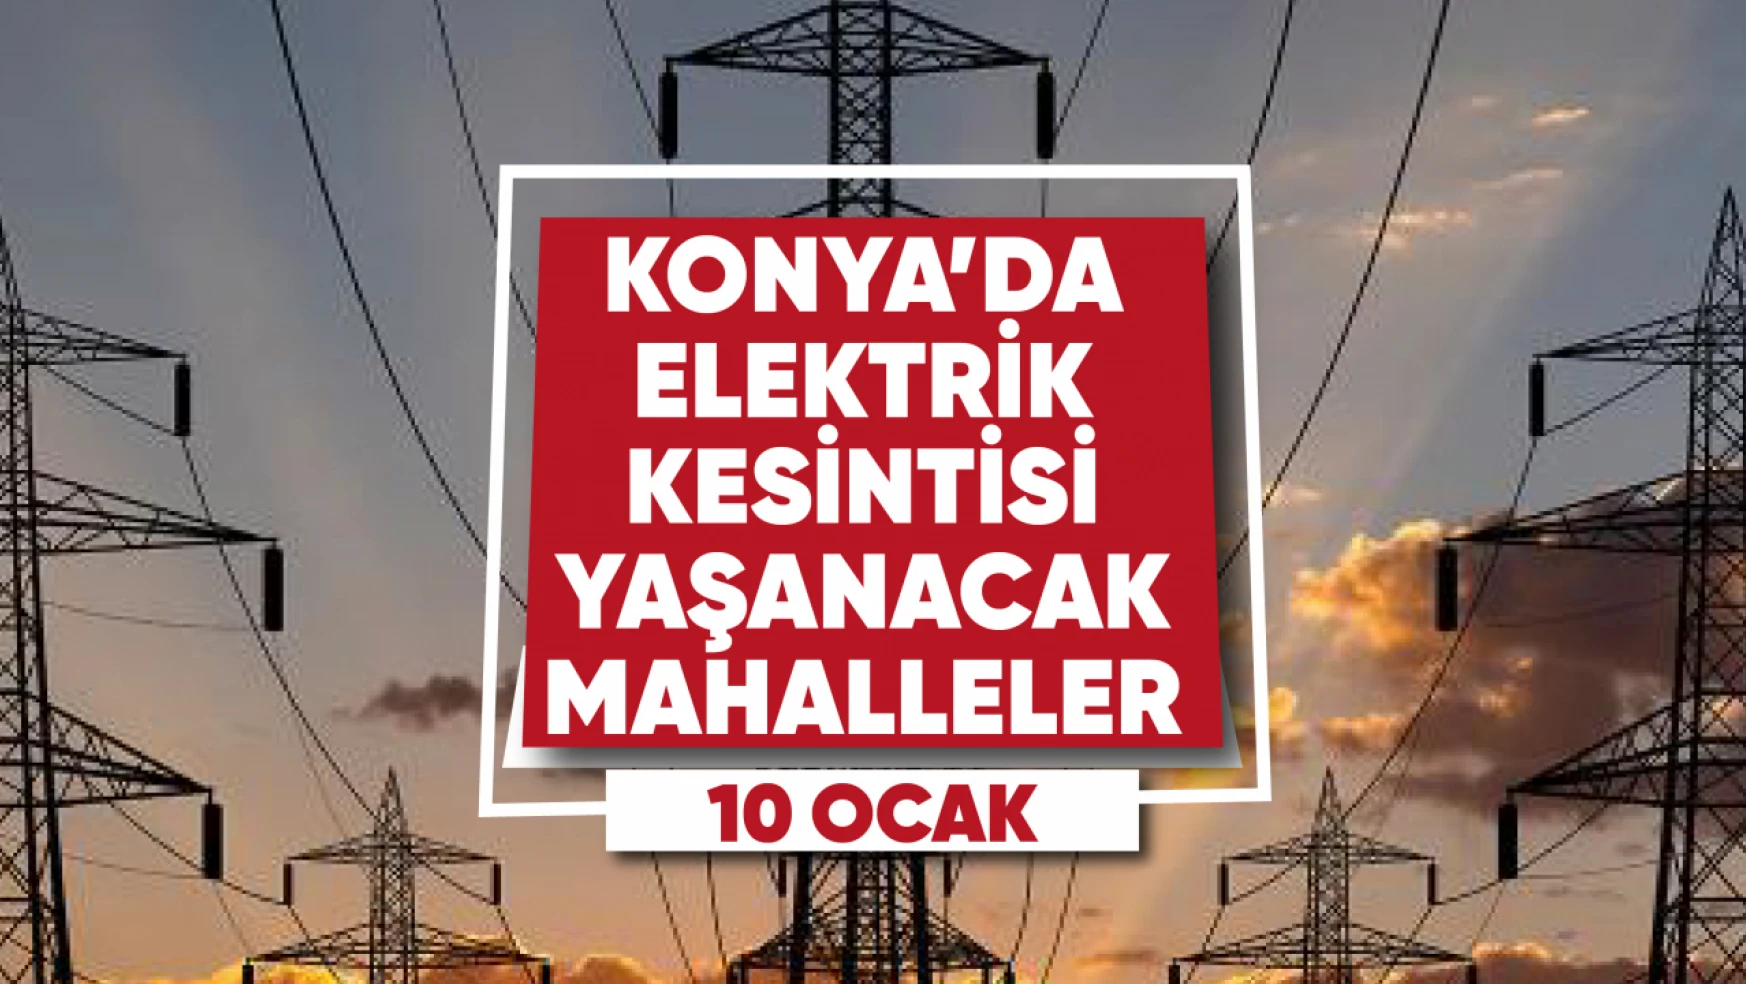 Konya'da elektrik kesintisi yaşanacak mahalle ve sokaklar (10 Ocak)